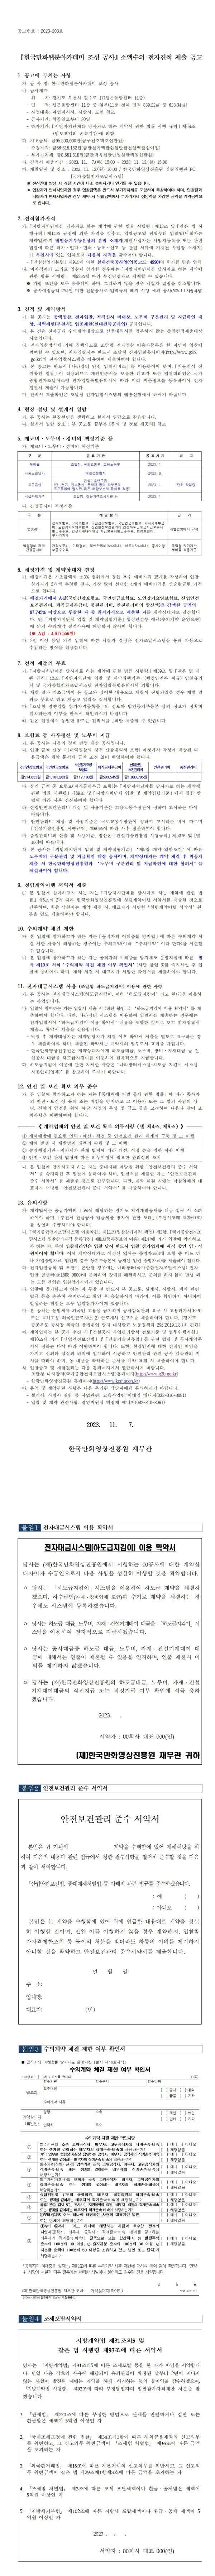 『한국만화웹툰아카데미 조성 공사』 소액수의 전자견적 제출 공고